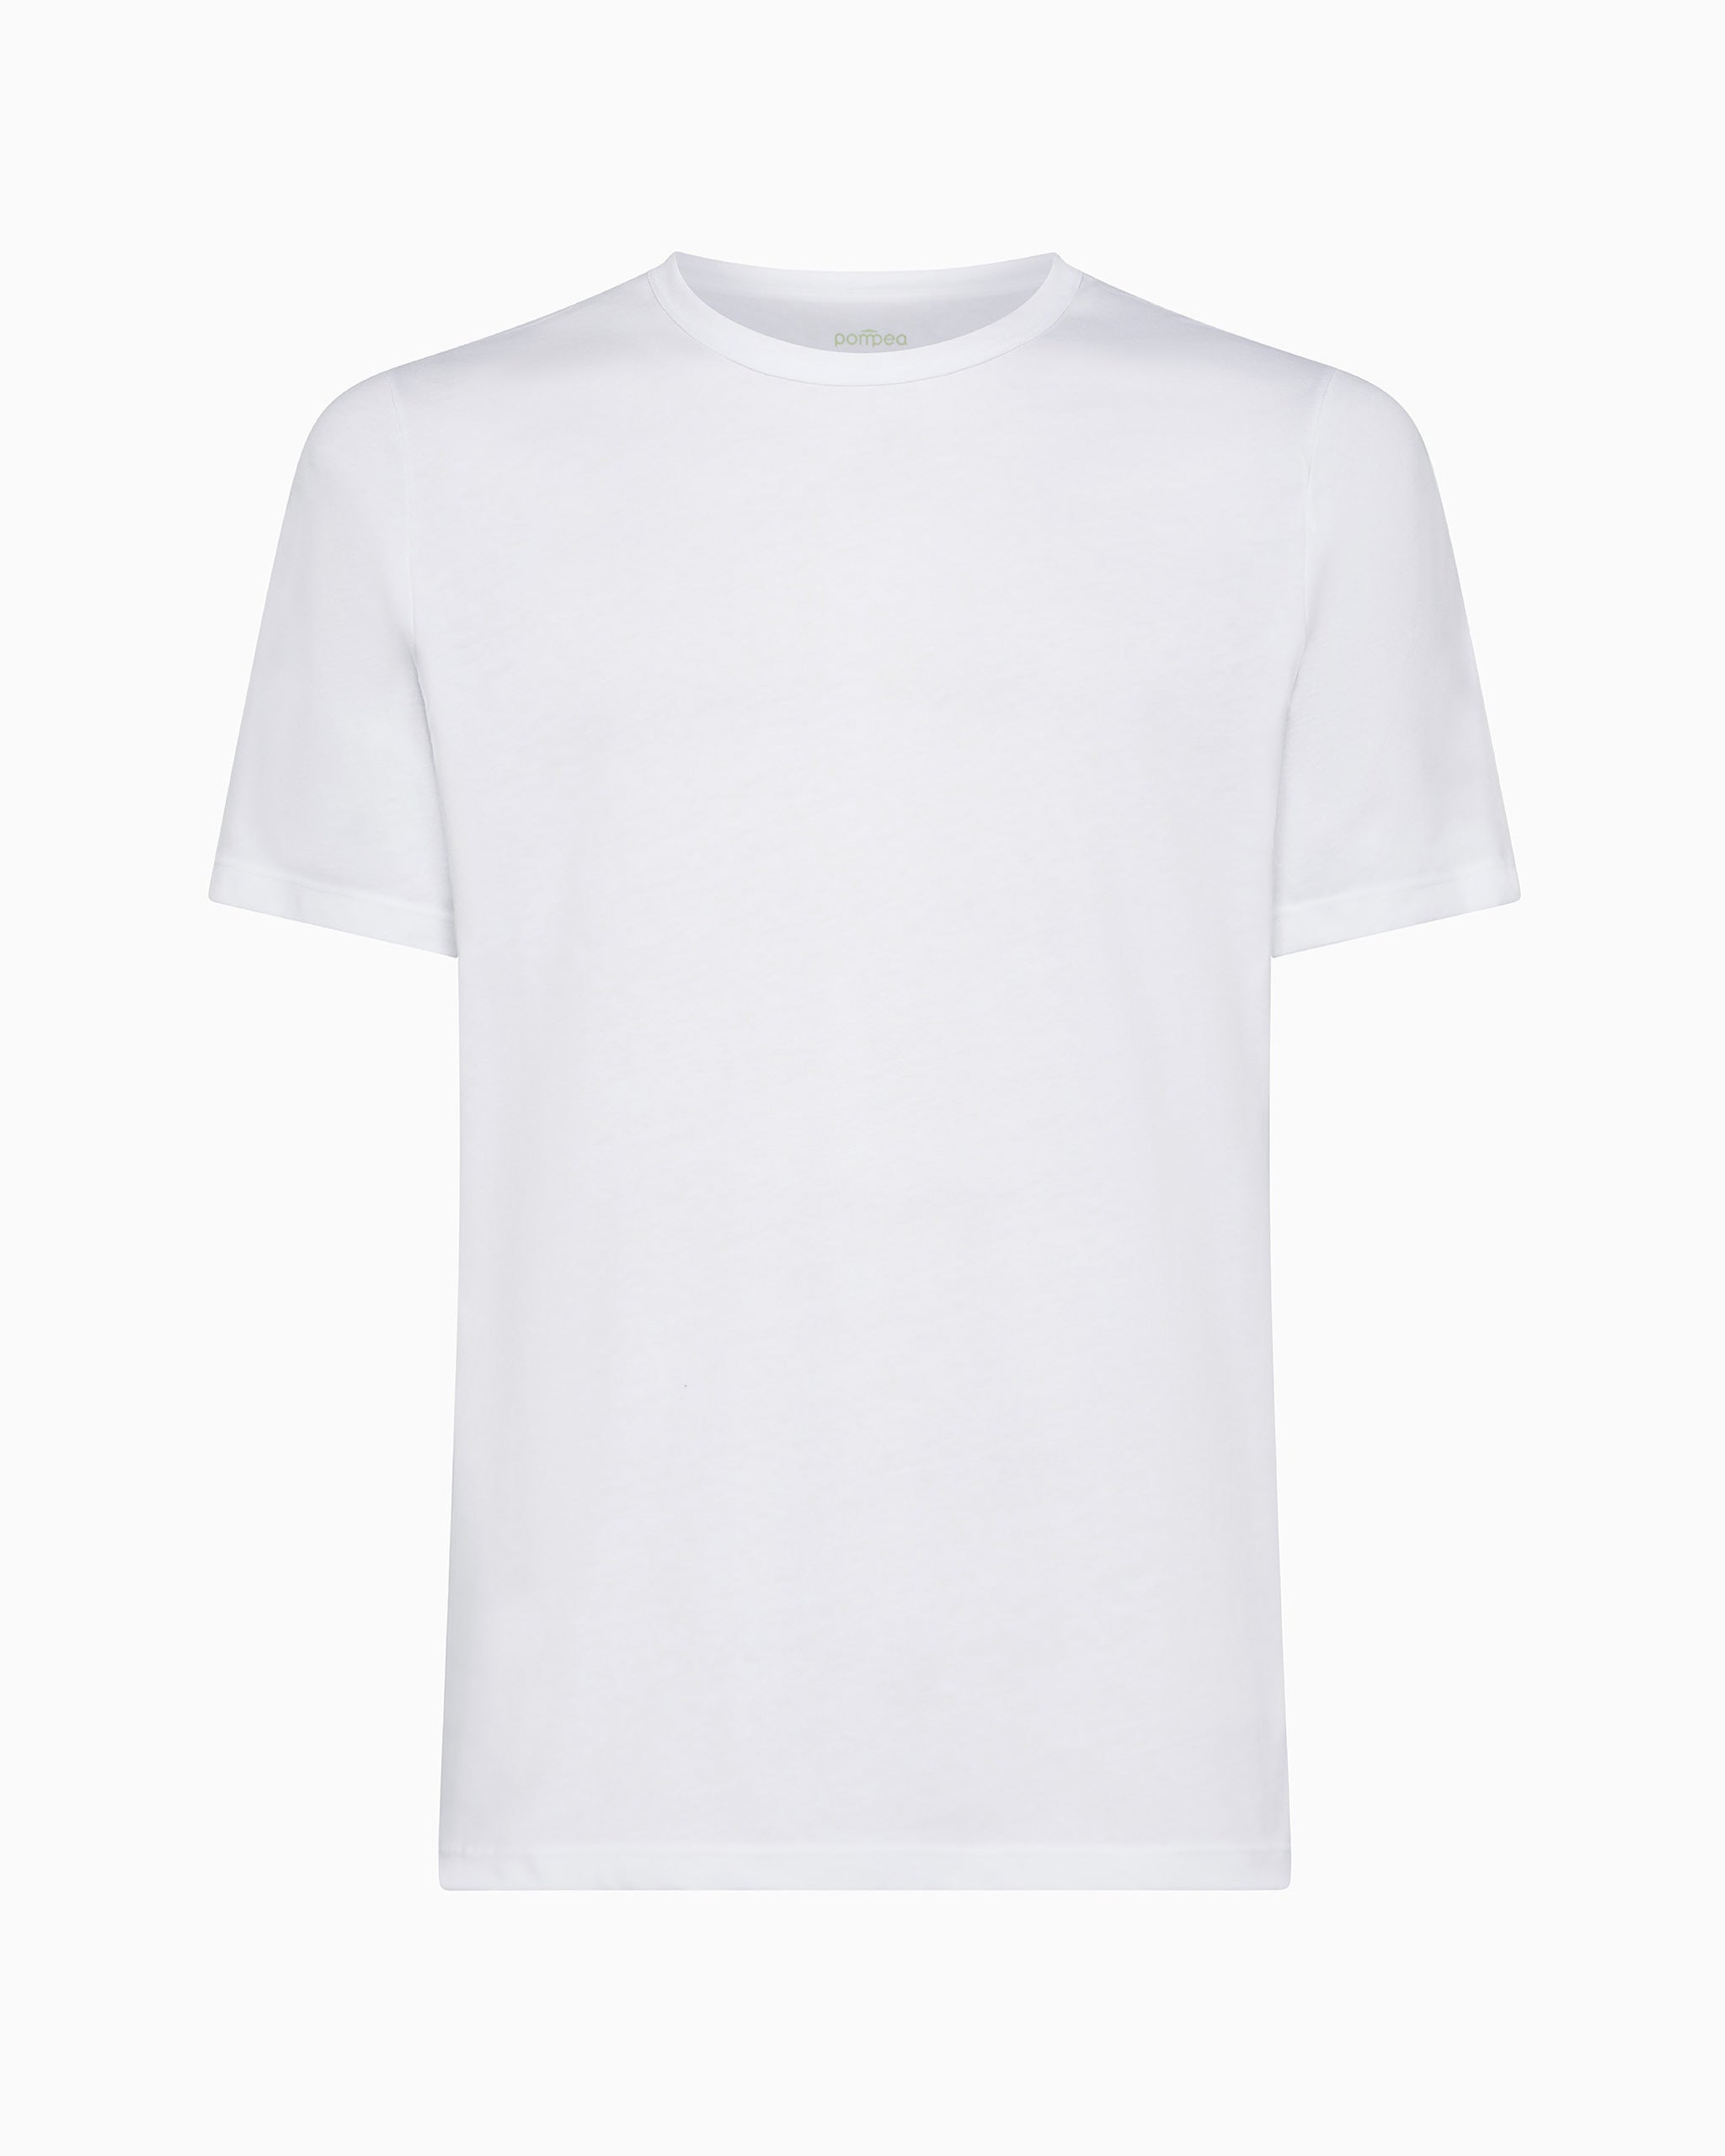 Cotton Planet Bio-Baumwoll-T-Shirt mit Rundhalsausschnitt, bequeme Passform